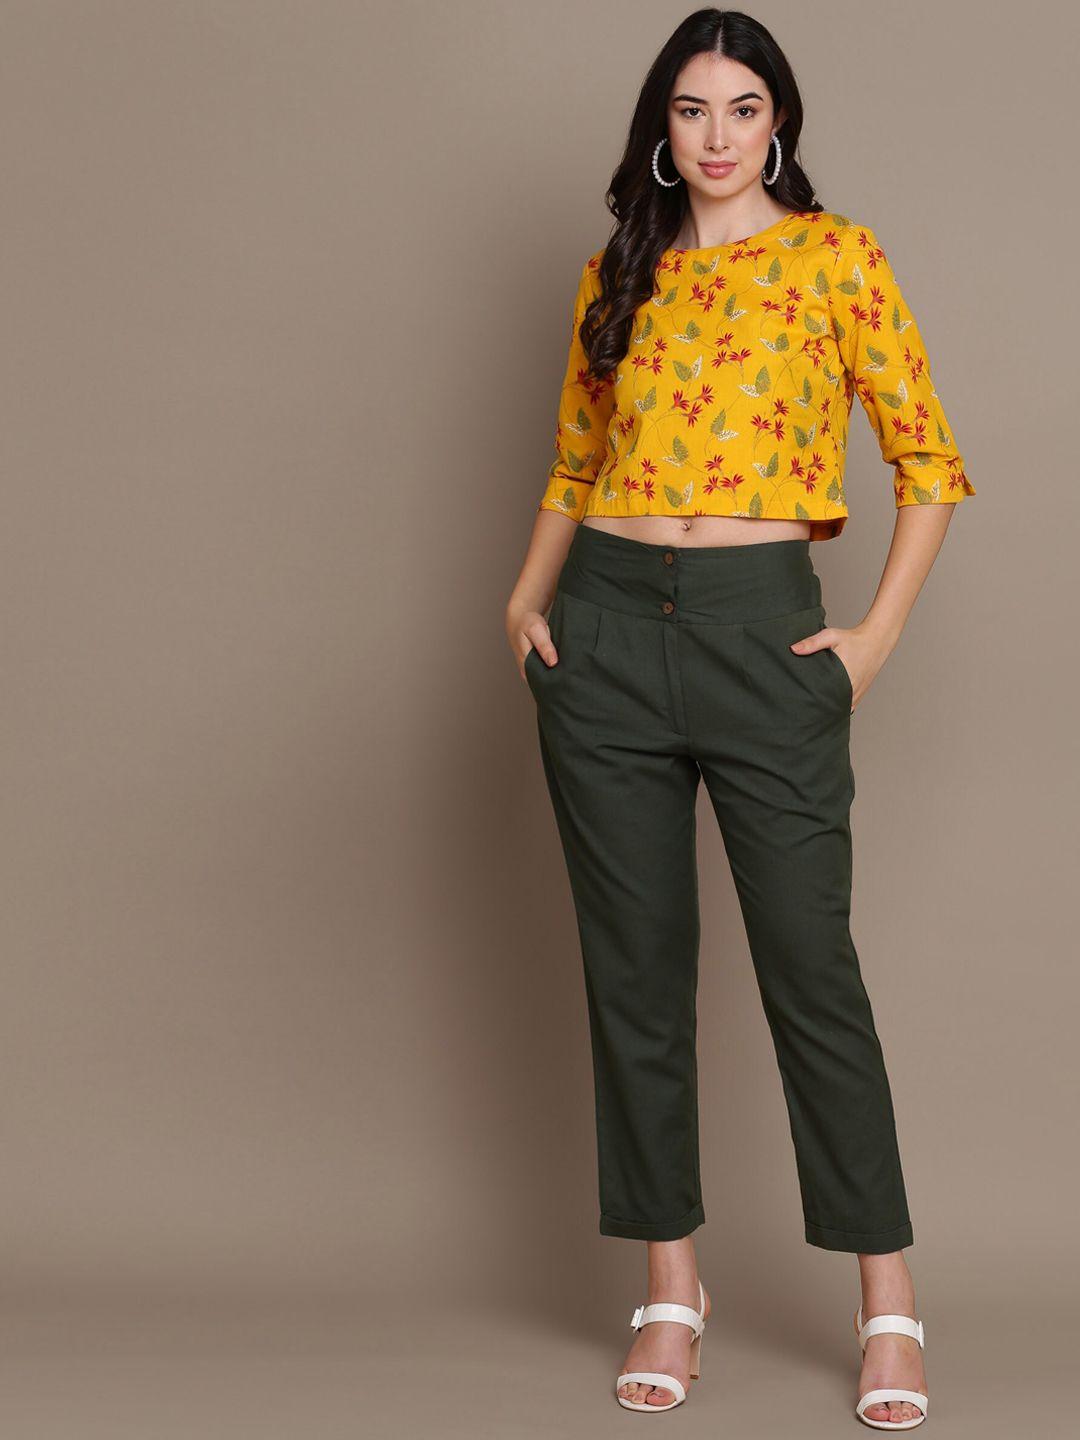 malhaar floral printed crop top & trouser